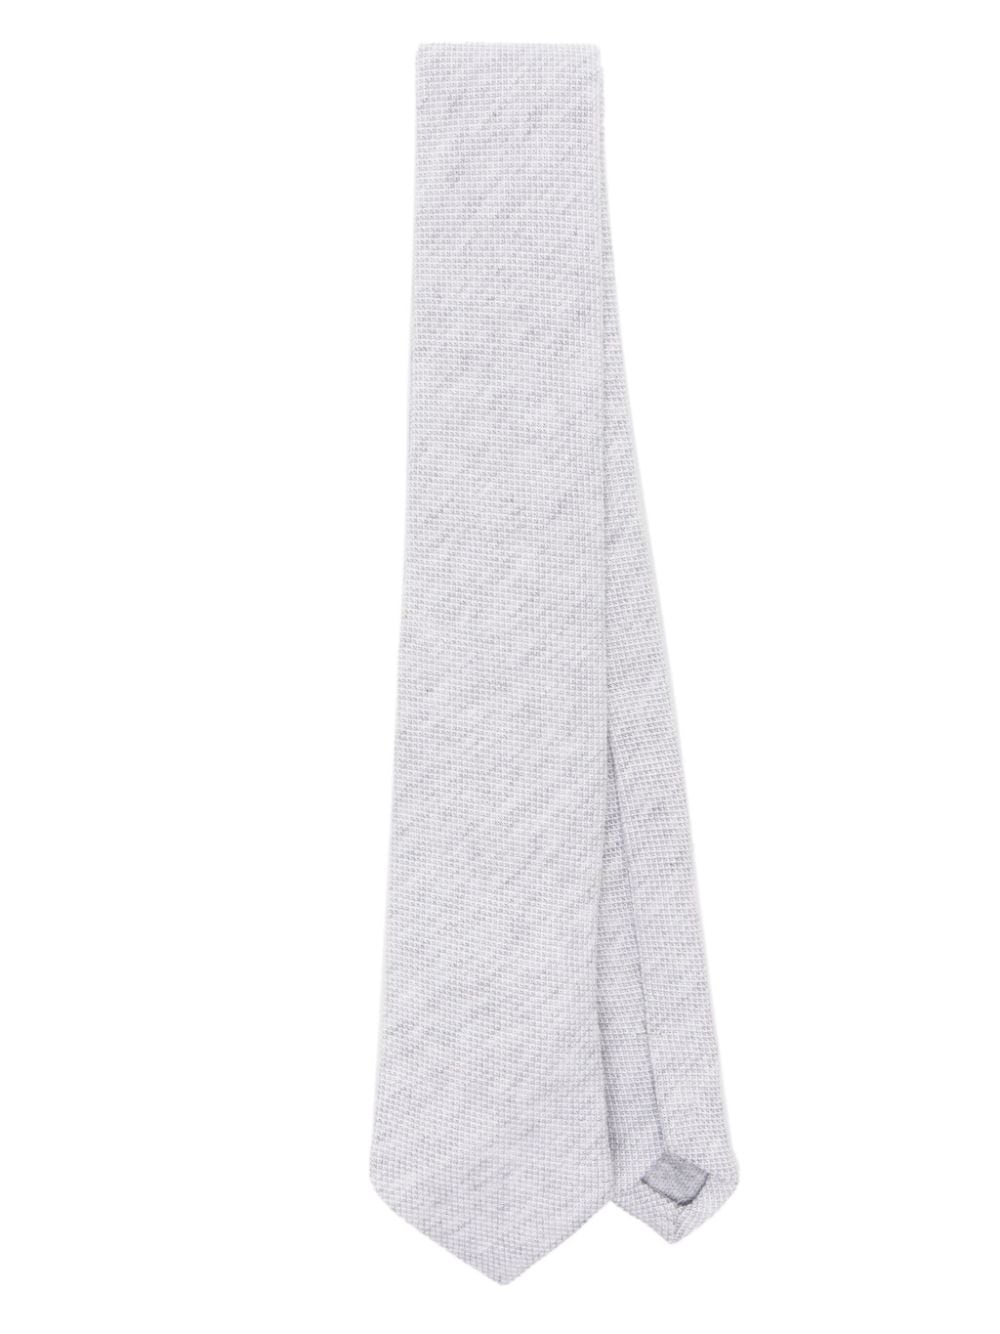 Cravate grise pour enfant